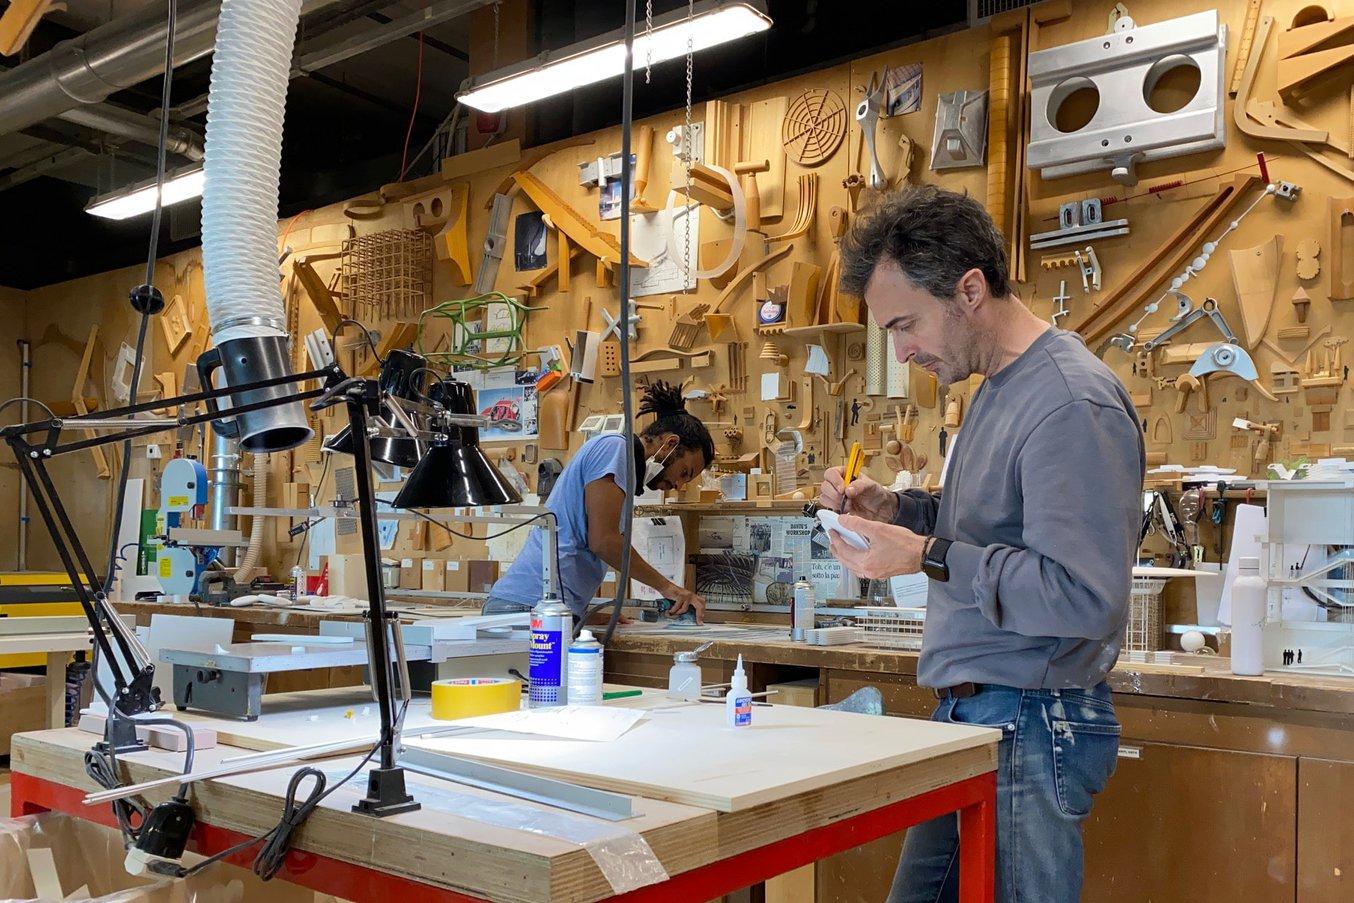 Специалисты по моделированию компании Renzo Piano Франческо Терранова и Димитрий Ланже. Чтобы проверить разные предложения, они печатают сотни моделей в крупном и мелком масштабе для каждого проекта в Renzo Piano.